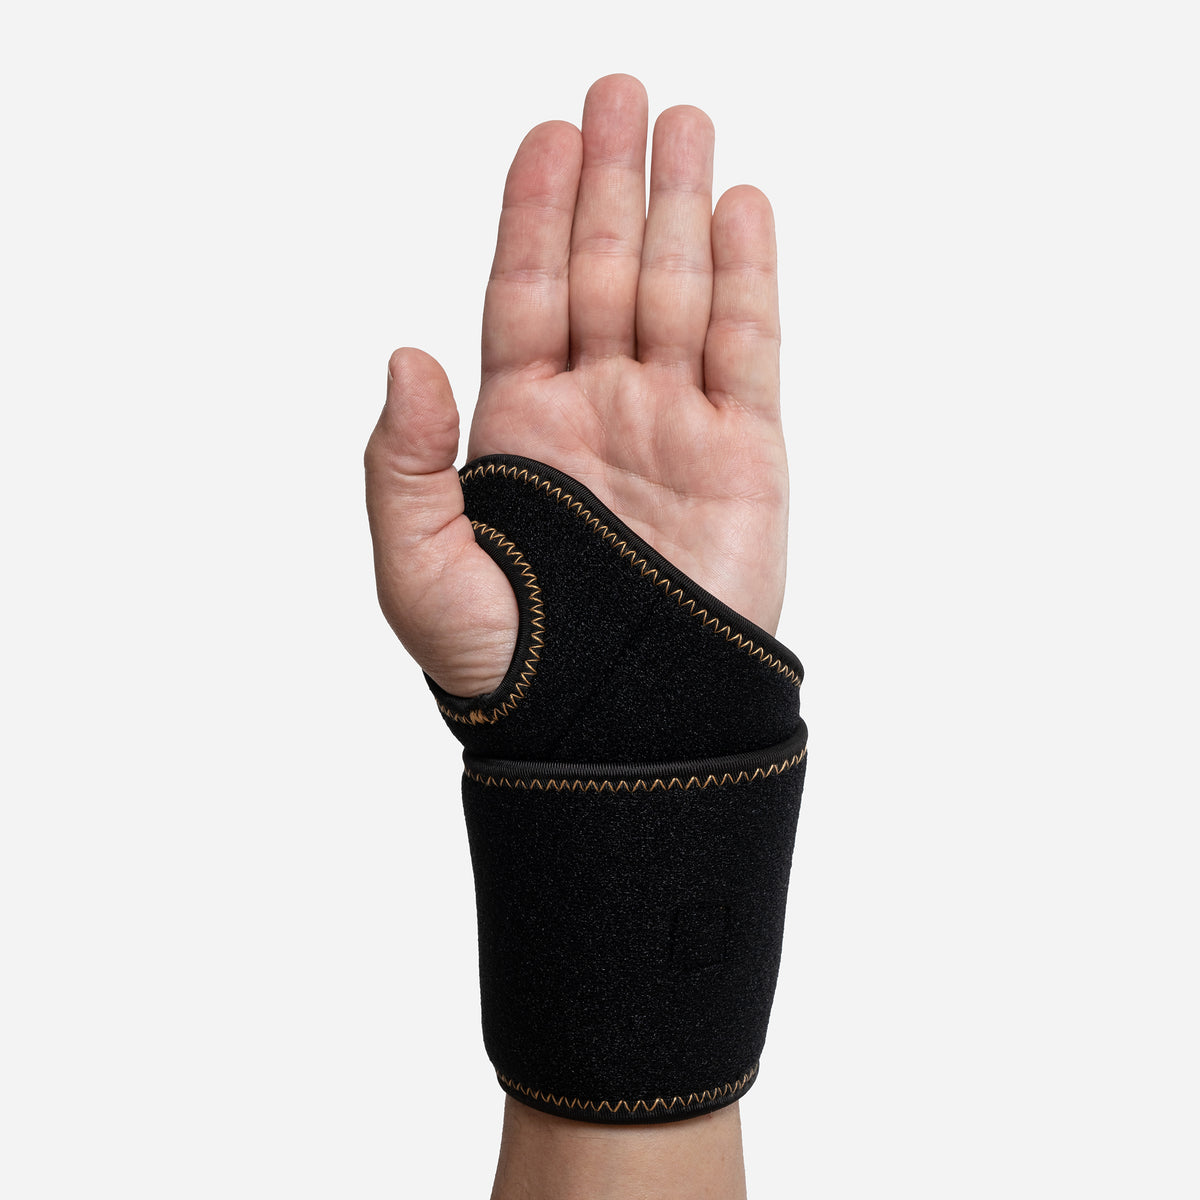 Adjustable Reversible Copper Fit Wrist Brace with Guam